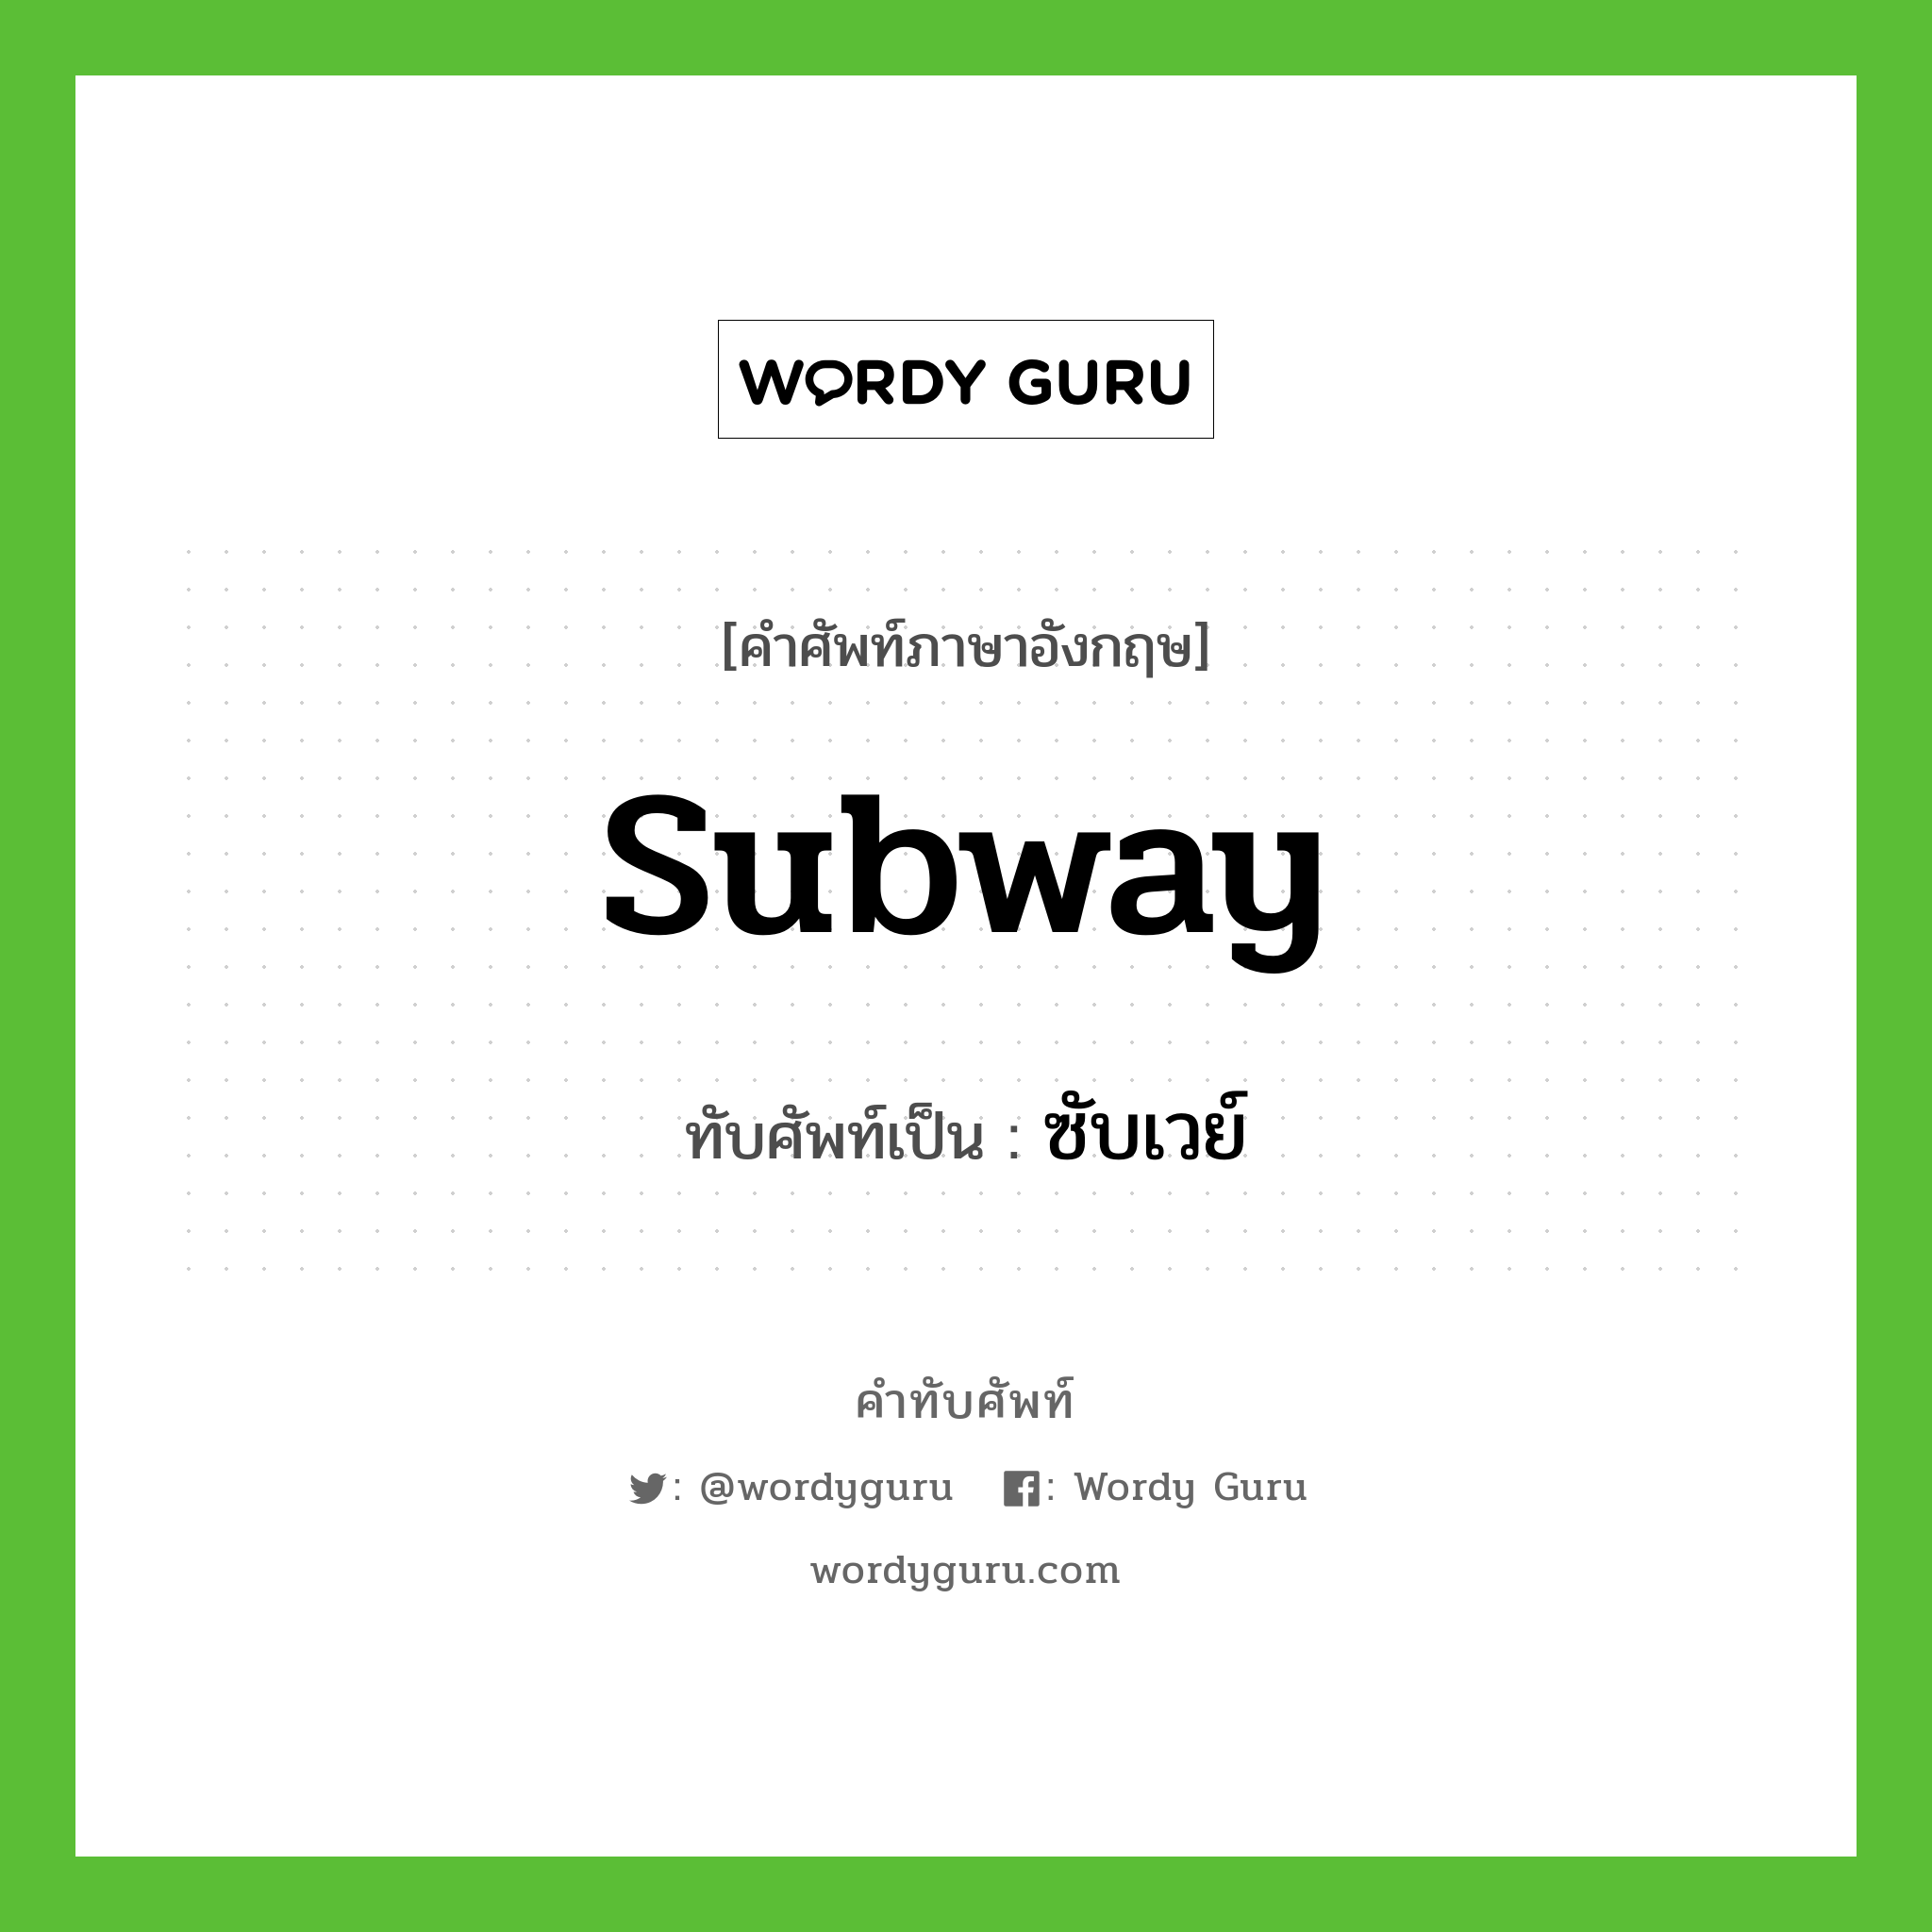 subway เขียนเป็นคำไทยว่าอะไร?, คำศัพท์ภาษาอังกฤษ subway ทับศัพท์เป็น ซับเวย์